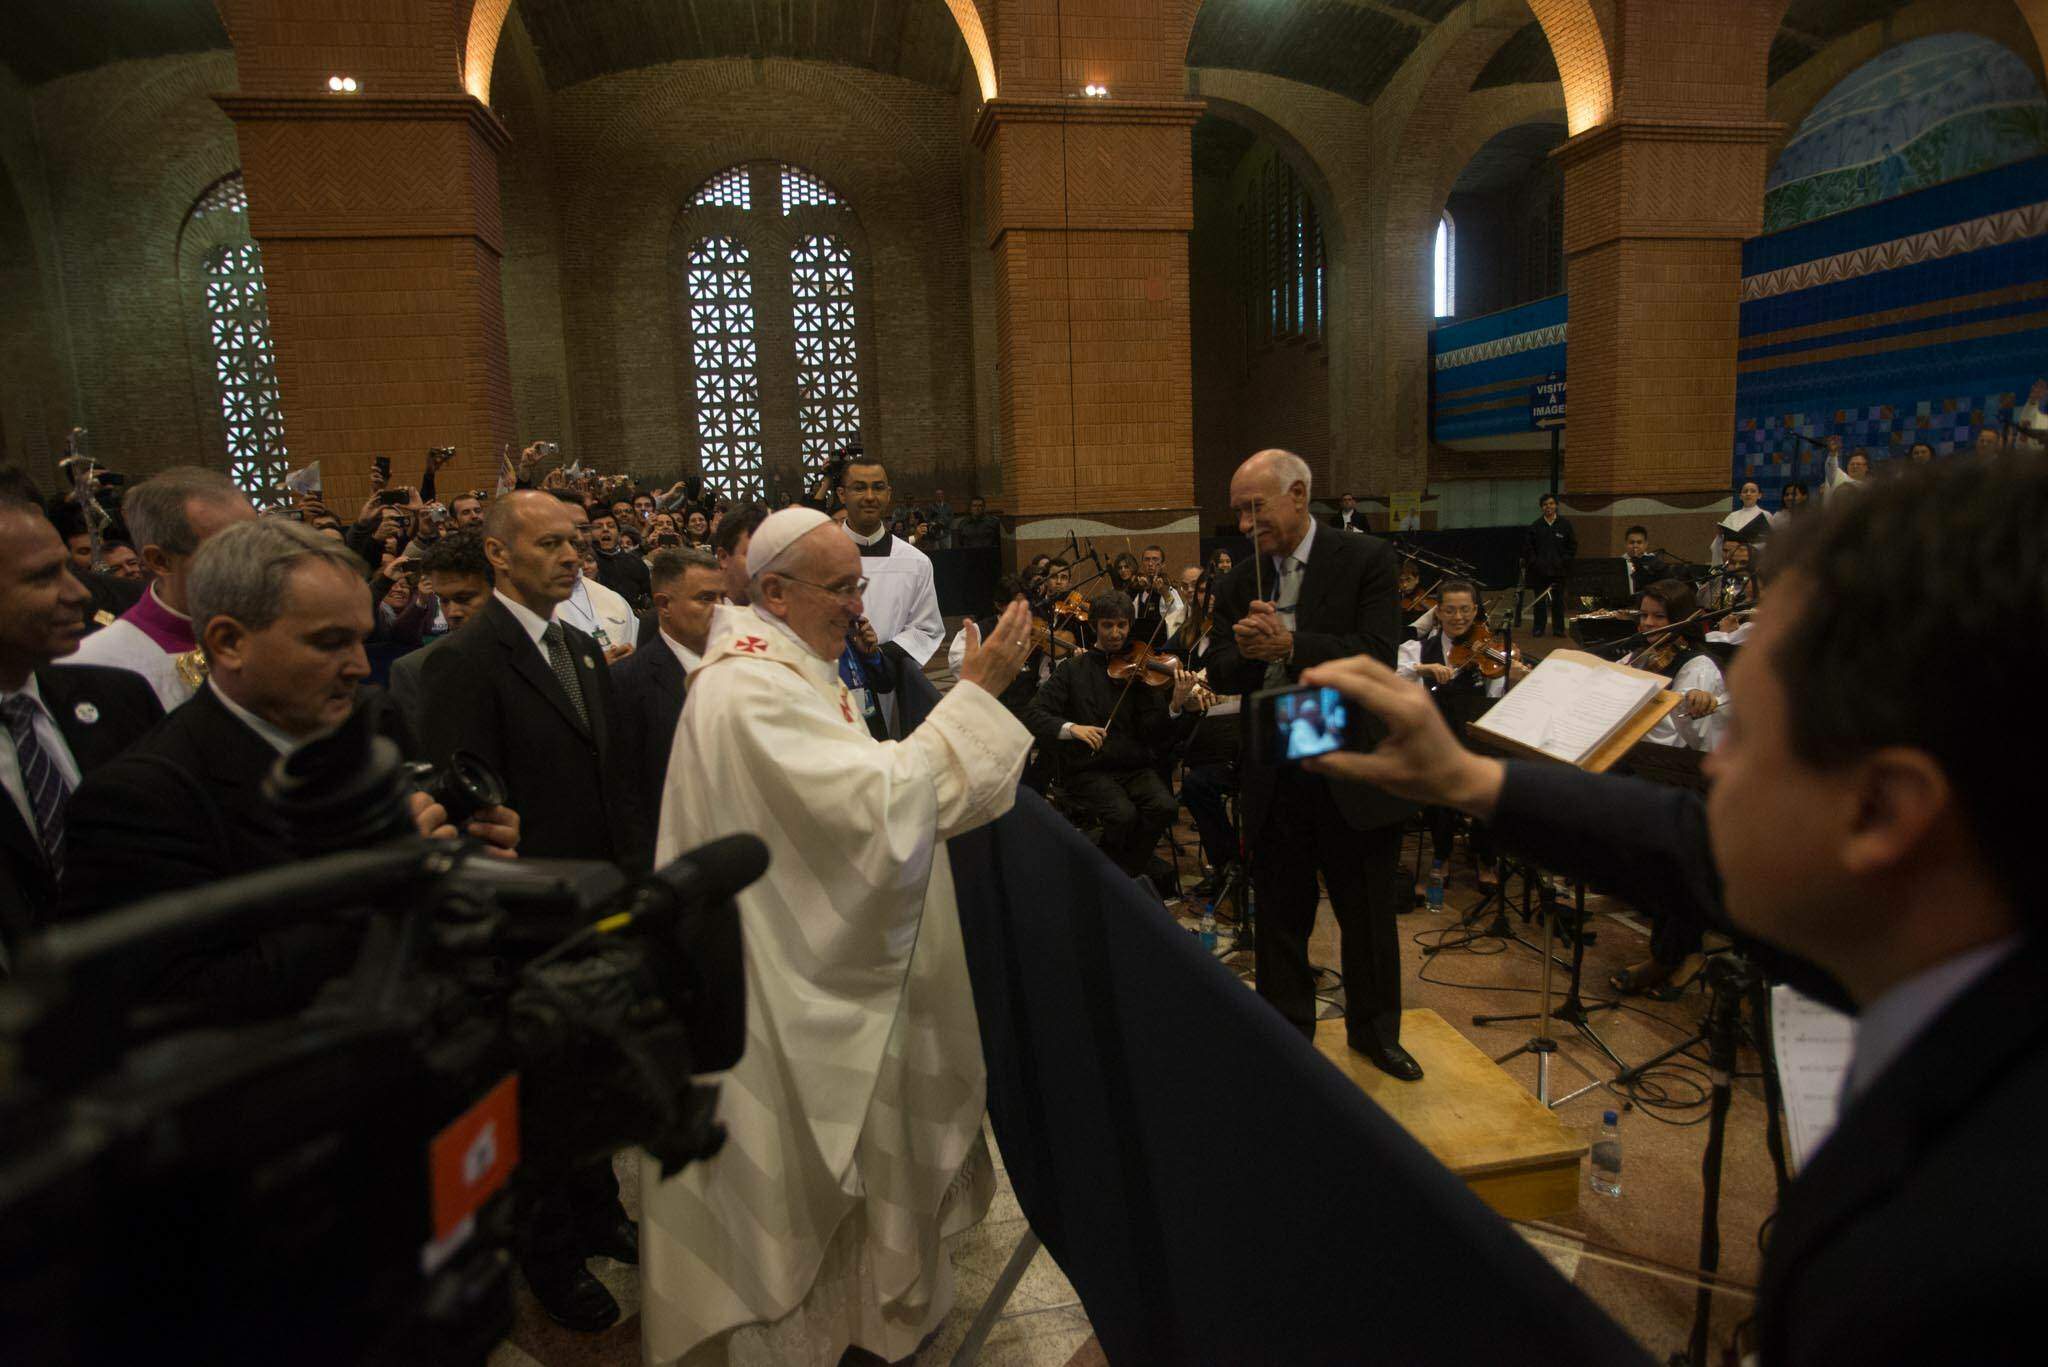 Em 2013, o PEMSA foi responsável pela música da missa de acolhida ao Papa Francisco